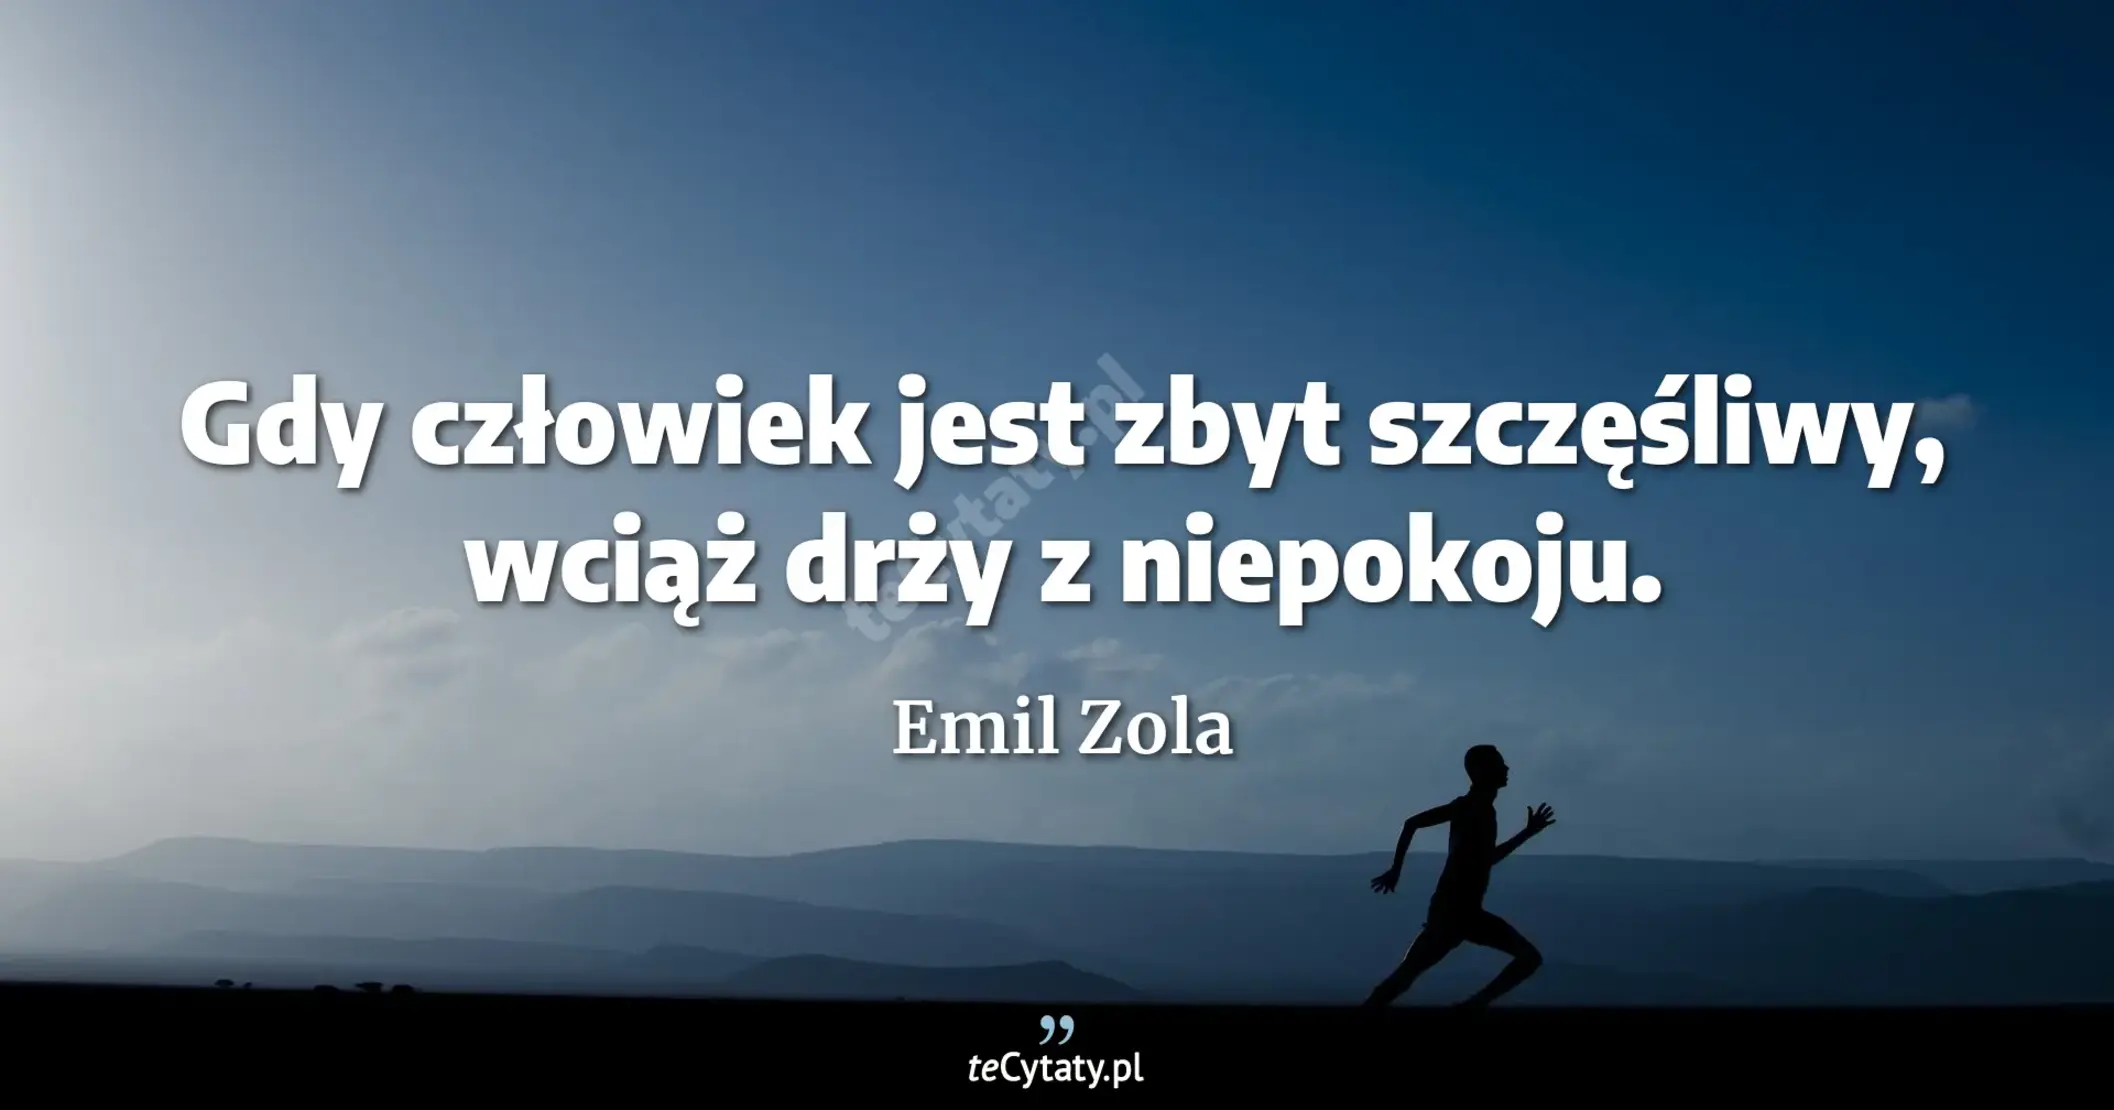 Gdy człowiek jest zbyt szczęśliwy, wciąż drży z niepokoju. - Emil Zola